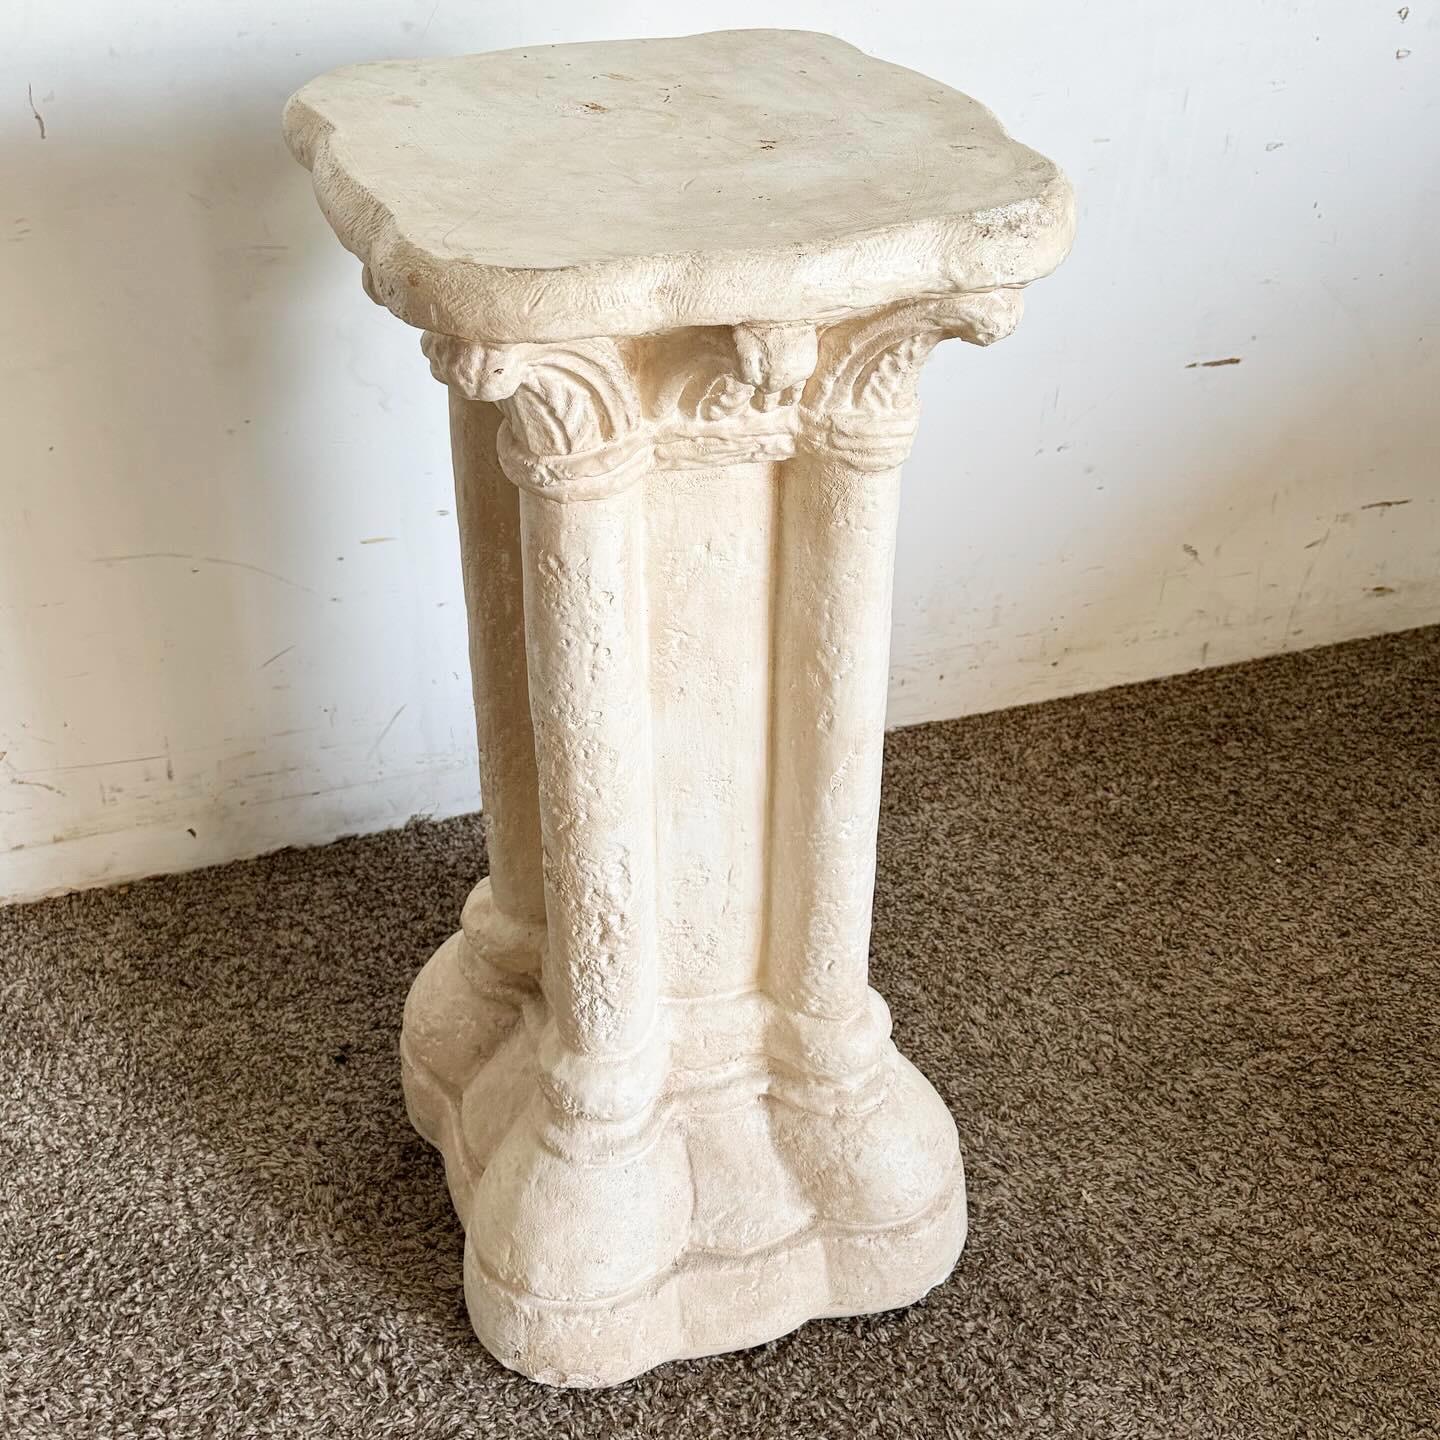 Le piédestal pilier en céramique coulée Regency Plaster est un ajout parfait à toute pièce recherchant l'élégance classique. Fabriqué en céramique moulée en plâtre de haute qualité, il reflète le style orné de la Régence. Idéal pour présenter des